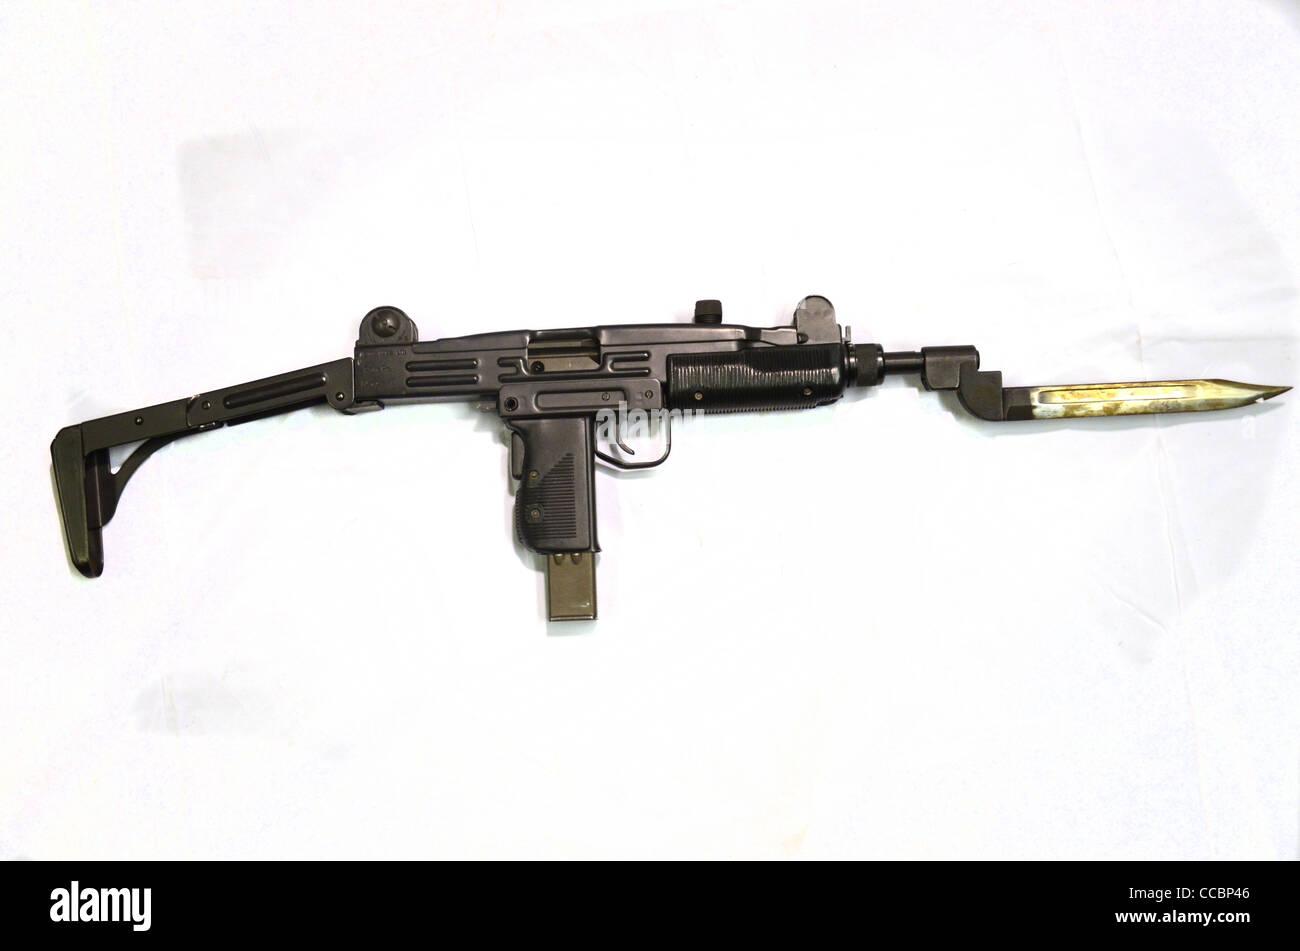 UZI Israei 9mm 1953 submachine gun Stock Photo